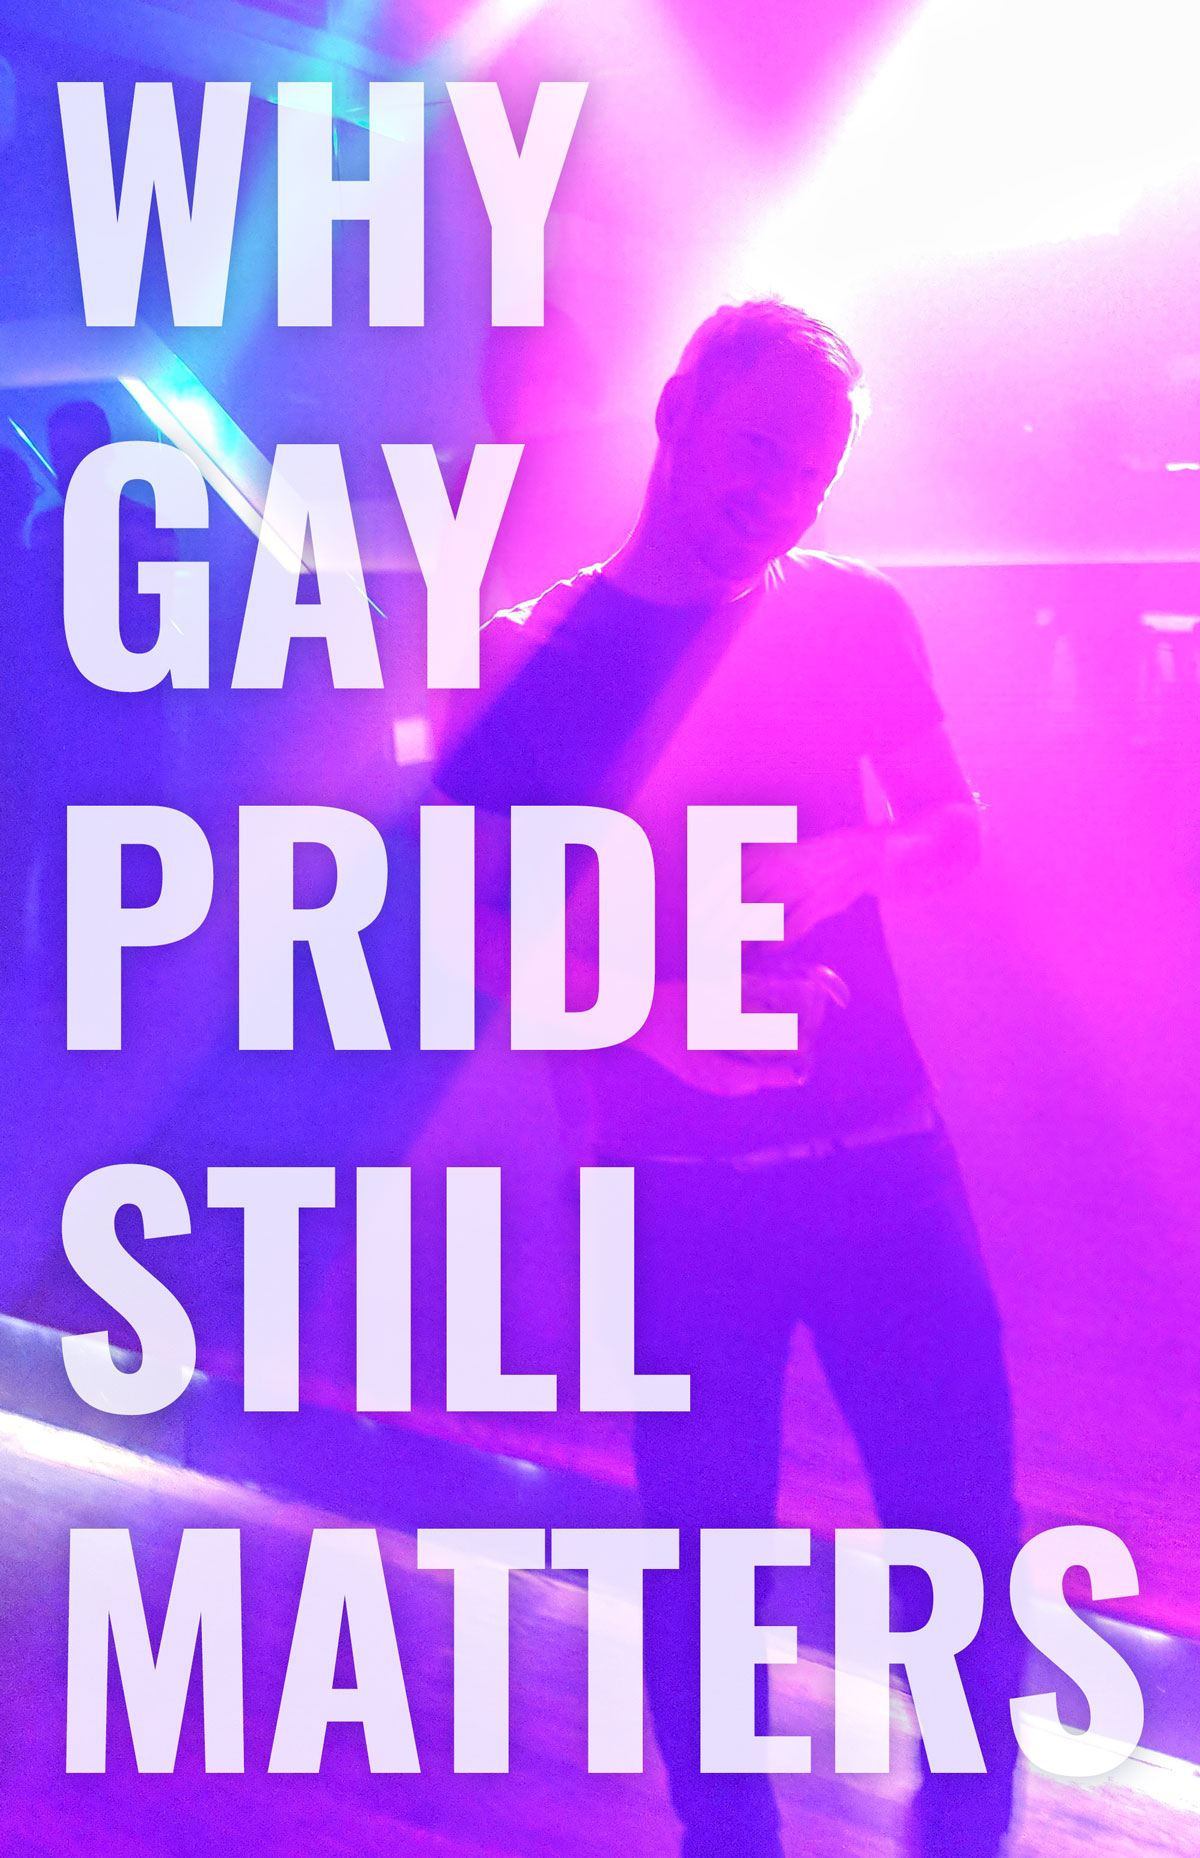 Why is the gay pride symbol a rainboe